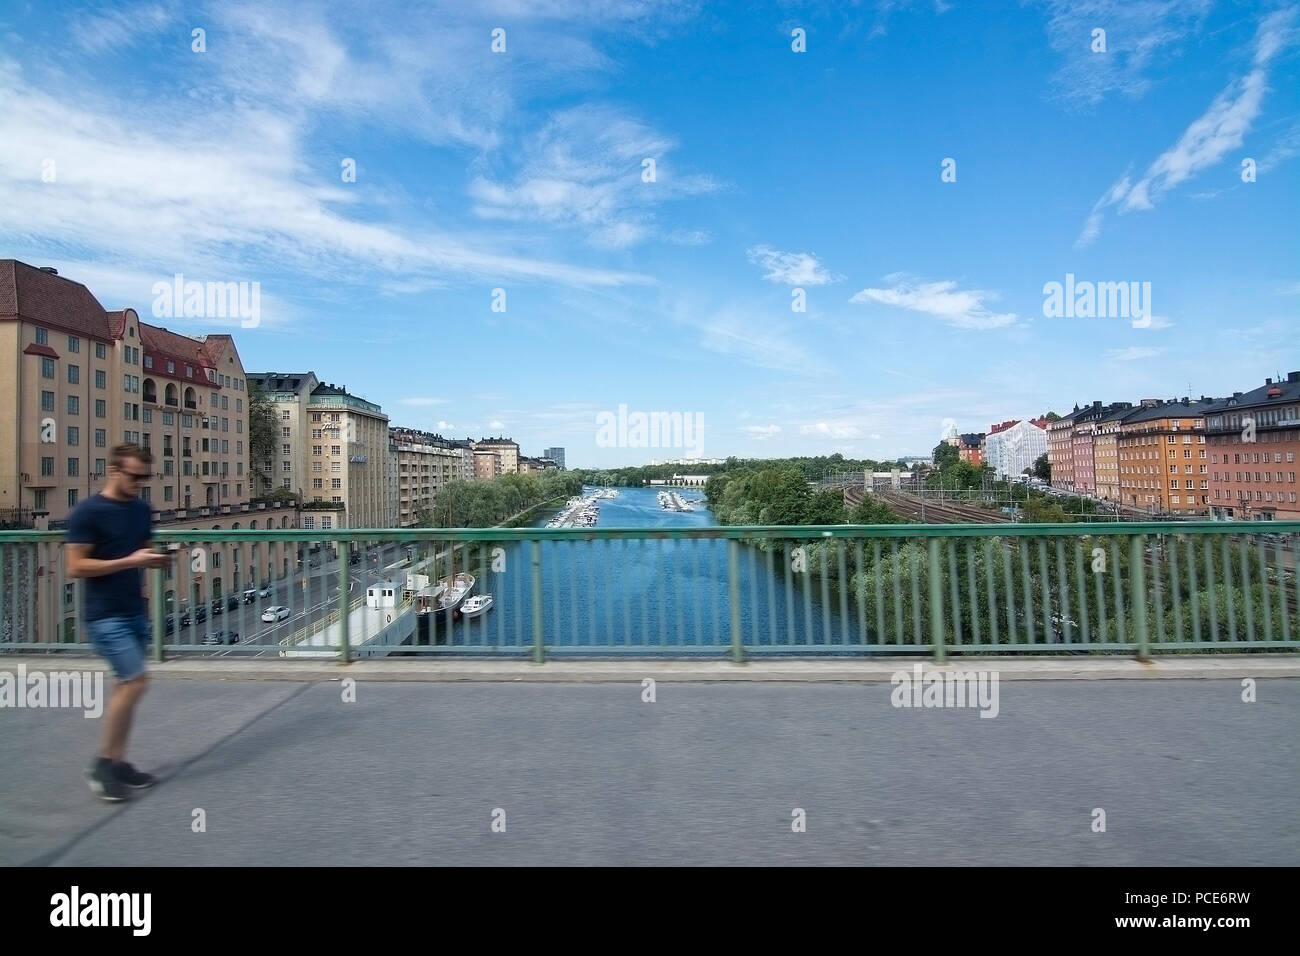 STOCKHOLM, Schweden - 11. JULI 2018: Sankt Erik Brücke zwischen Vasastan und Kungsholmen am 11. Juli 2018 in Stockholm, Schweden. Stockfoto